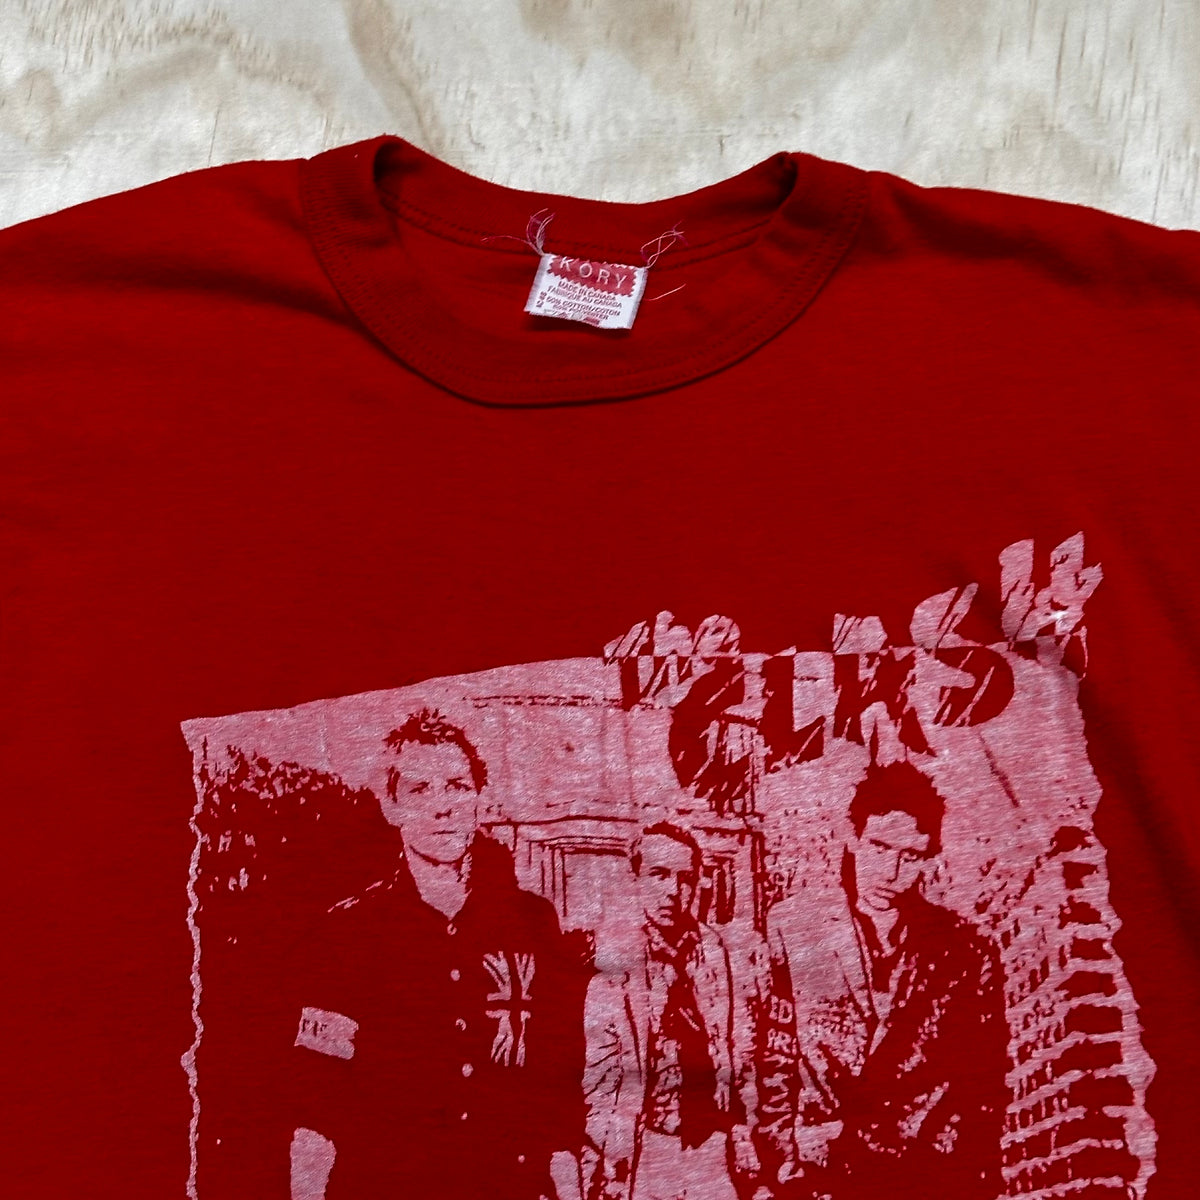 Vintage Original The Clash Graphic T shirt Women’s